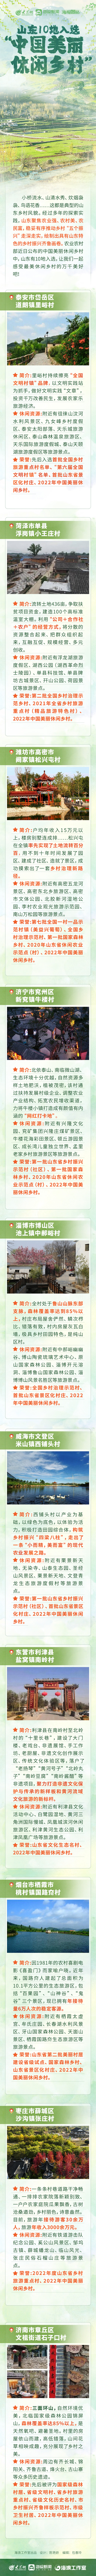 山东10地入选“中国美丽休闲乡村”